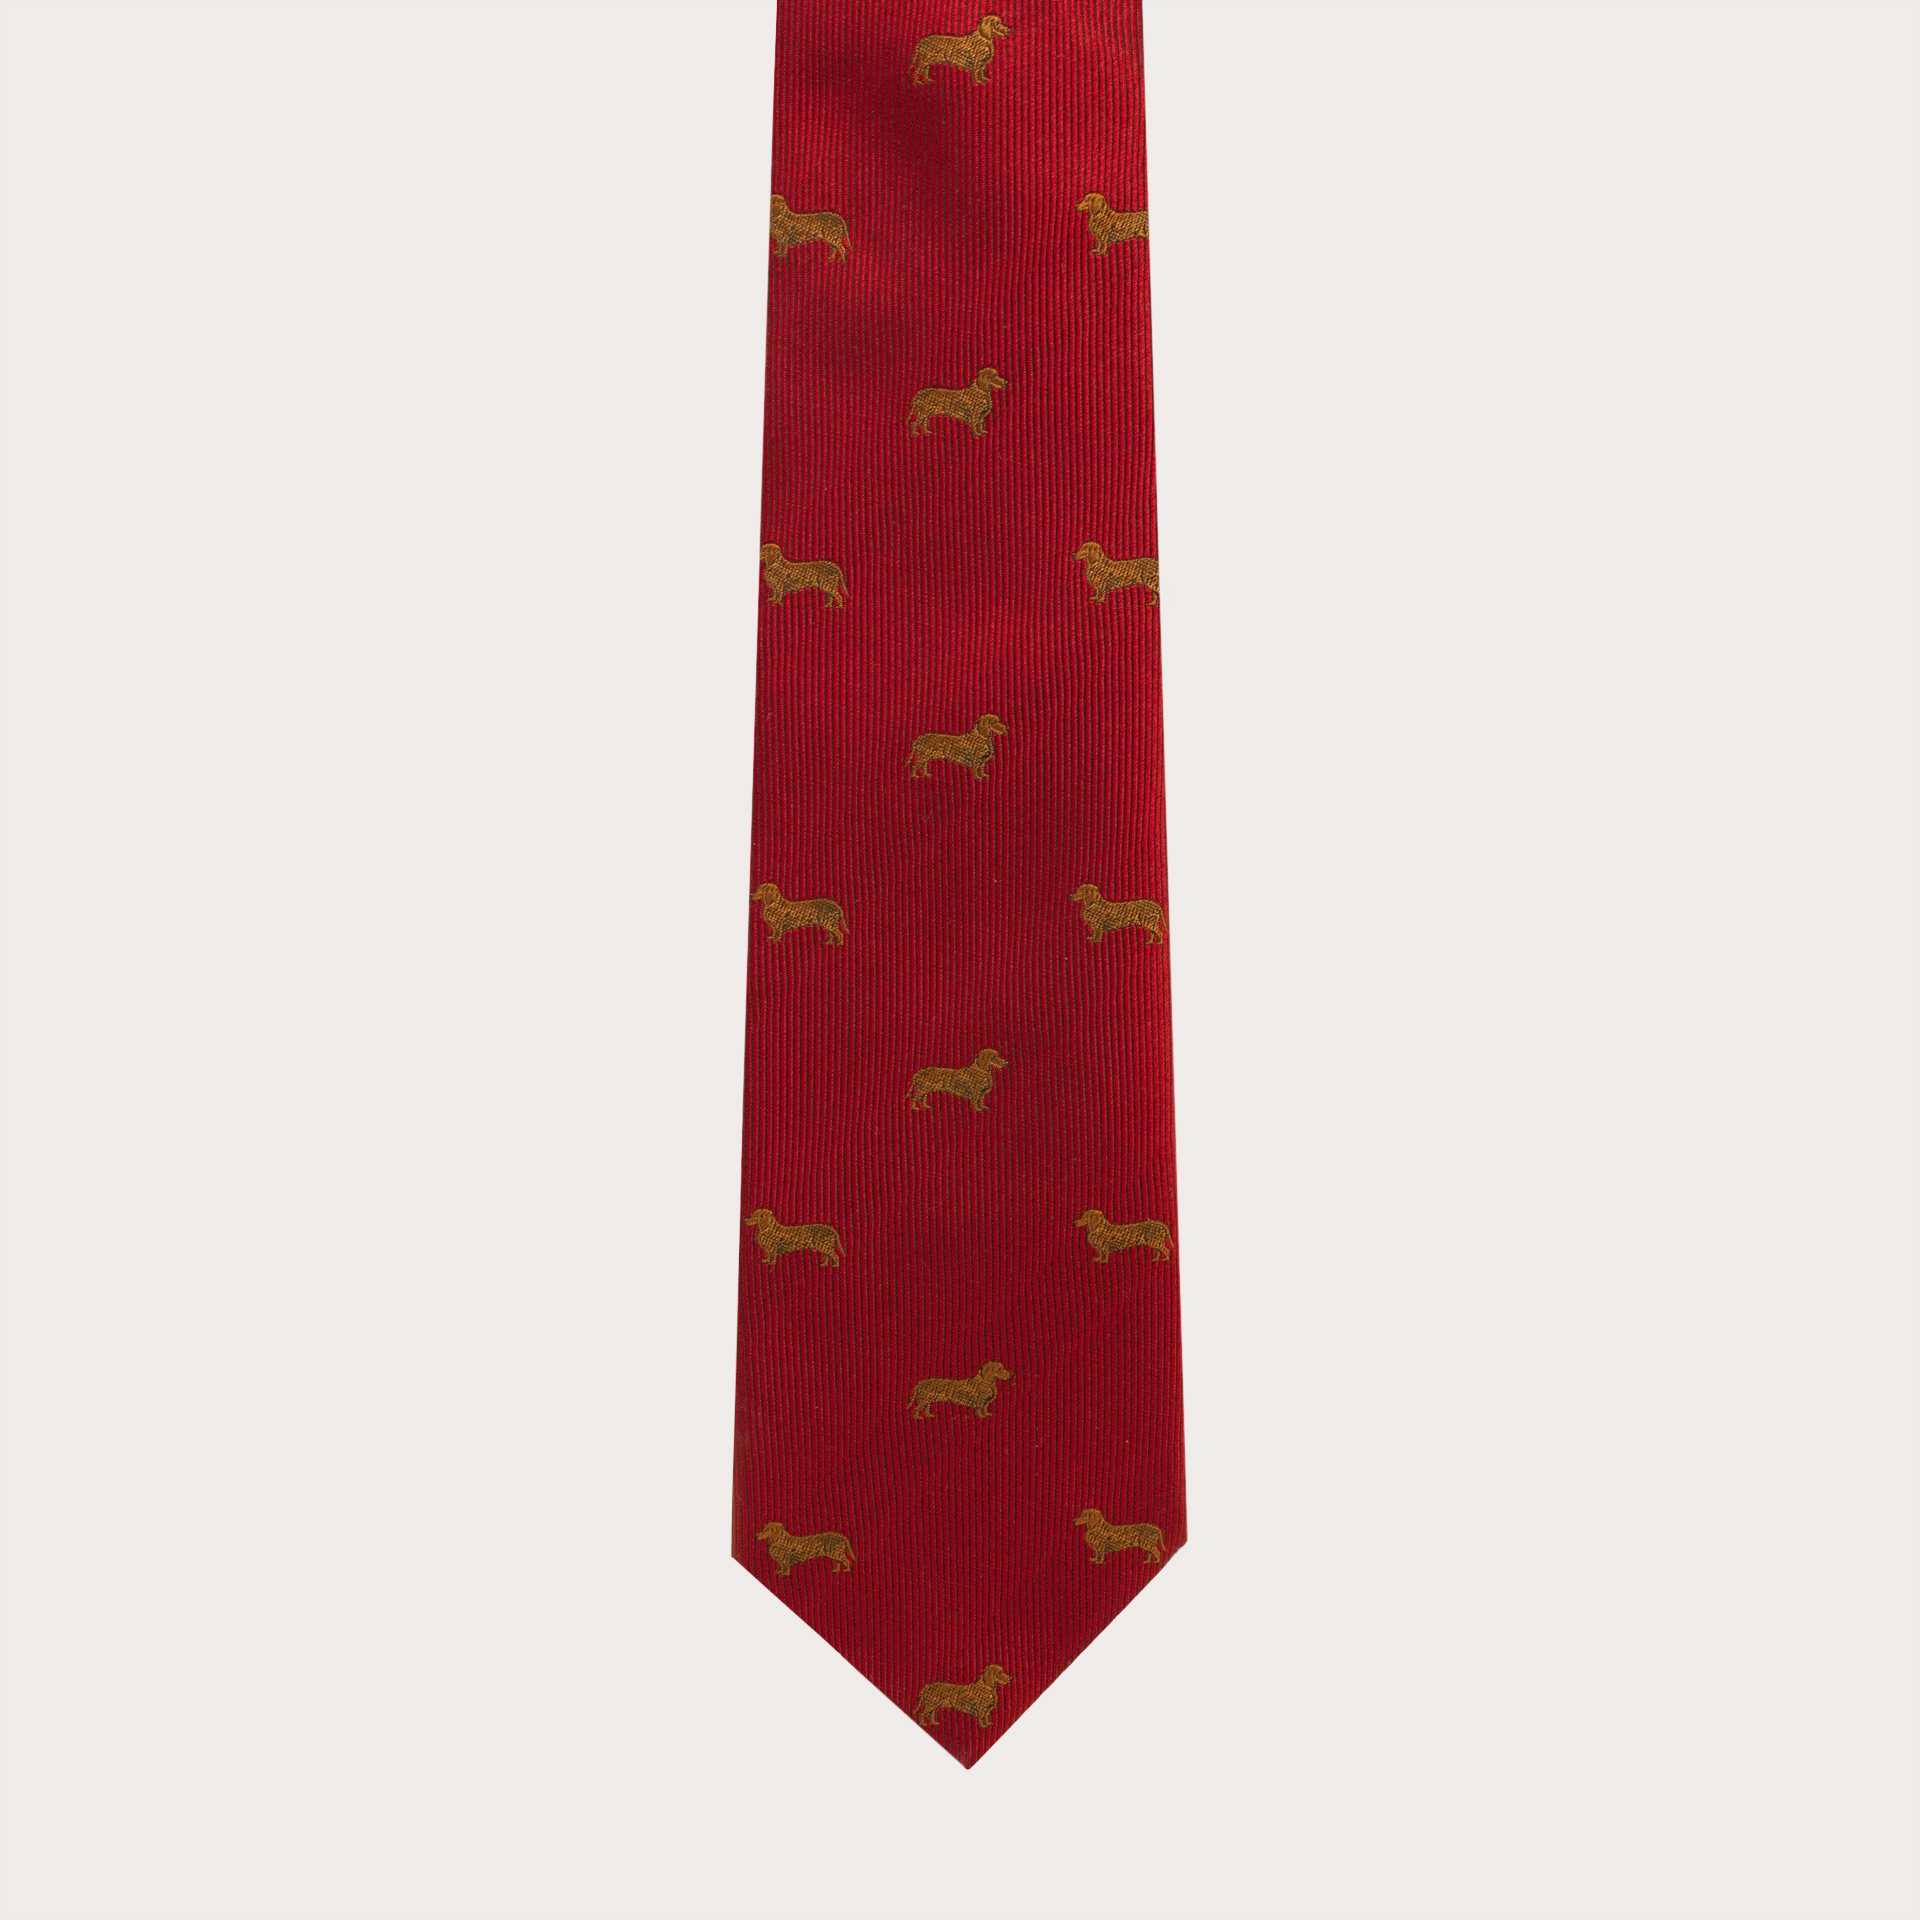 BRUCLE Cravate en soie jacquard, motif teckels rouge